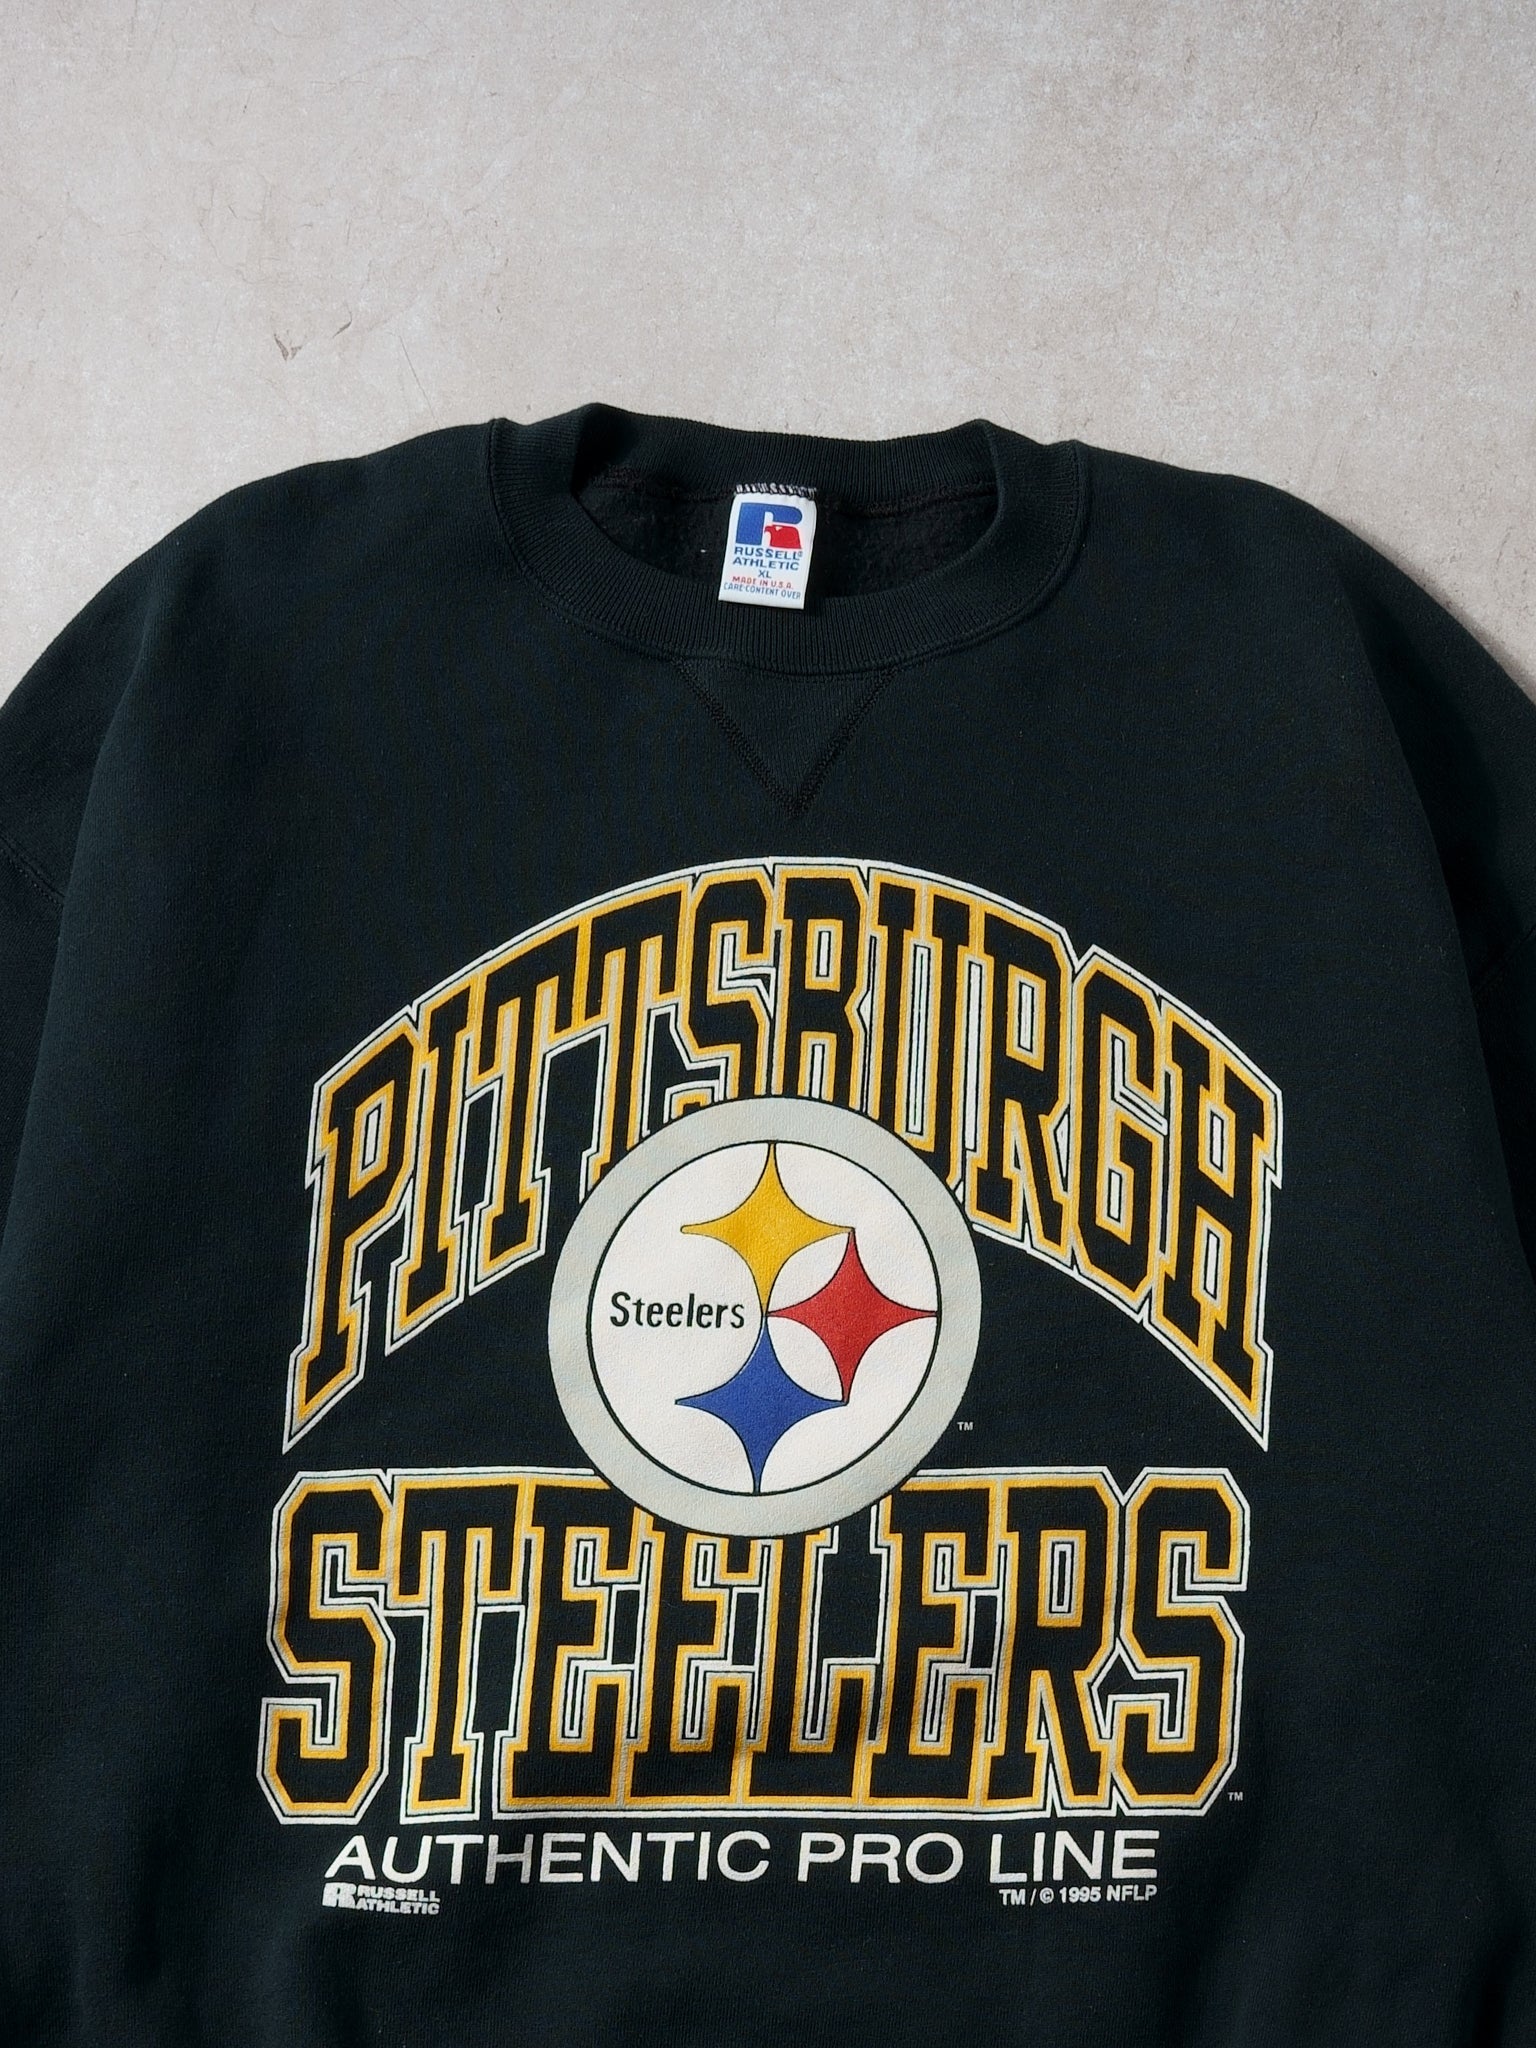 Vintage 90s Pittsburgh Steelers Pro Line Rusells Athletics Crewneck (L)